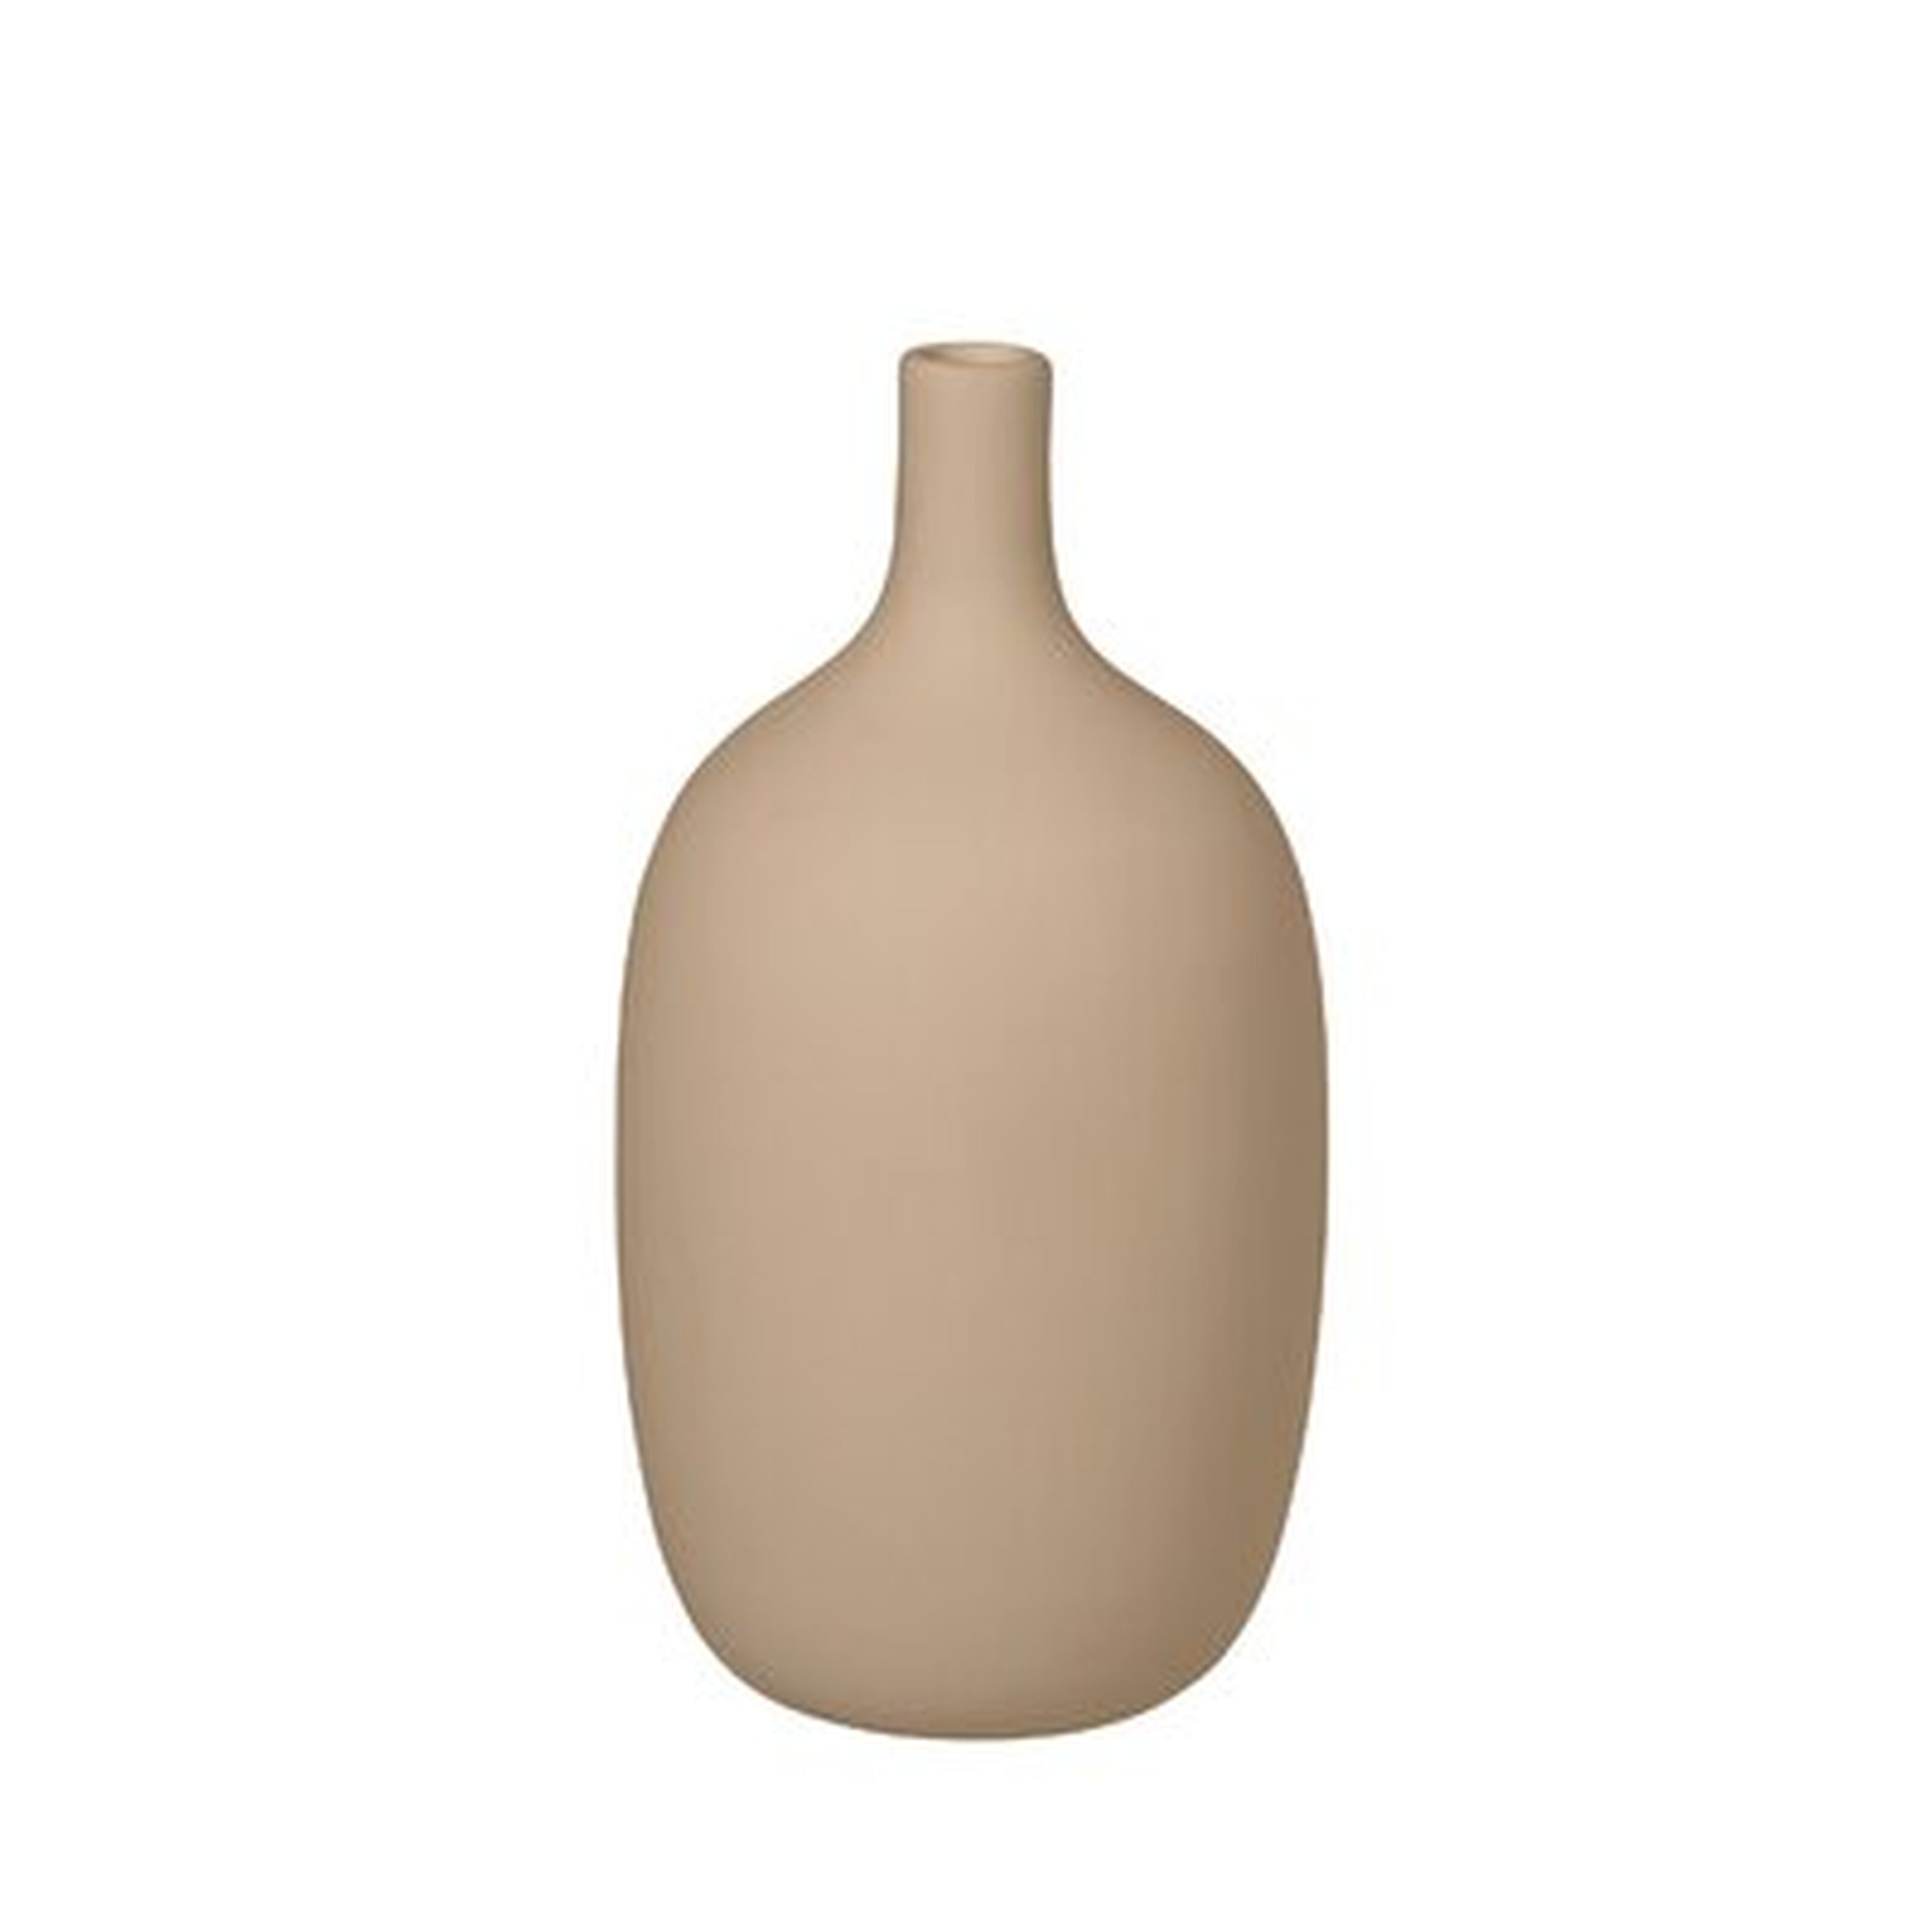 Ceola Ceramic Vase 4x8 - Wayfair